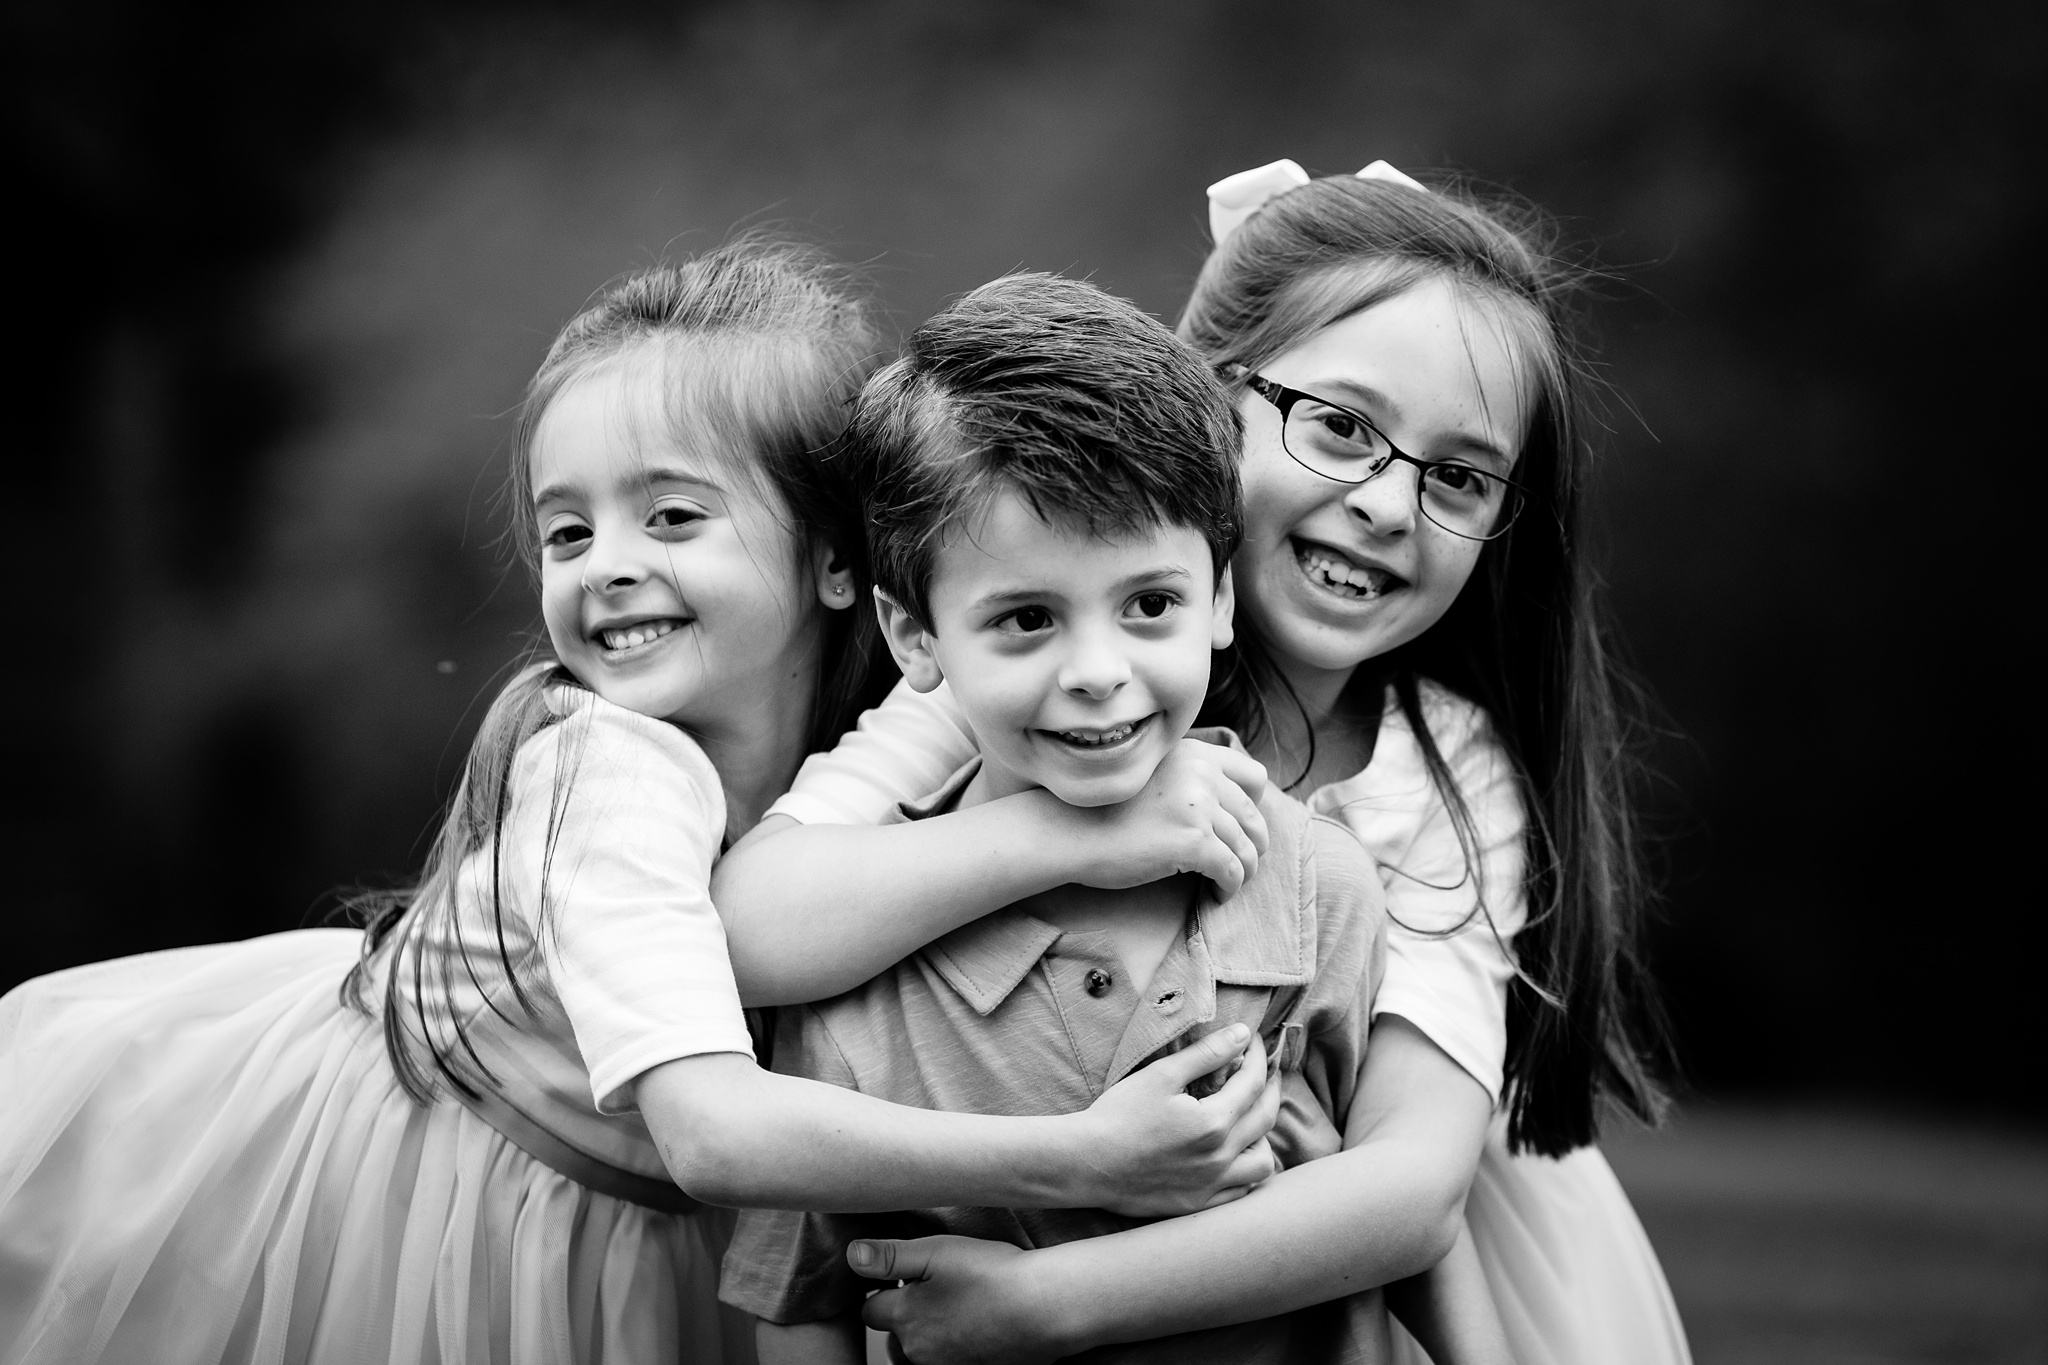 Pixton Family | Children & Family Photographer Atlanta Gwinnett County